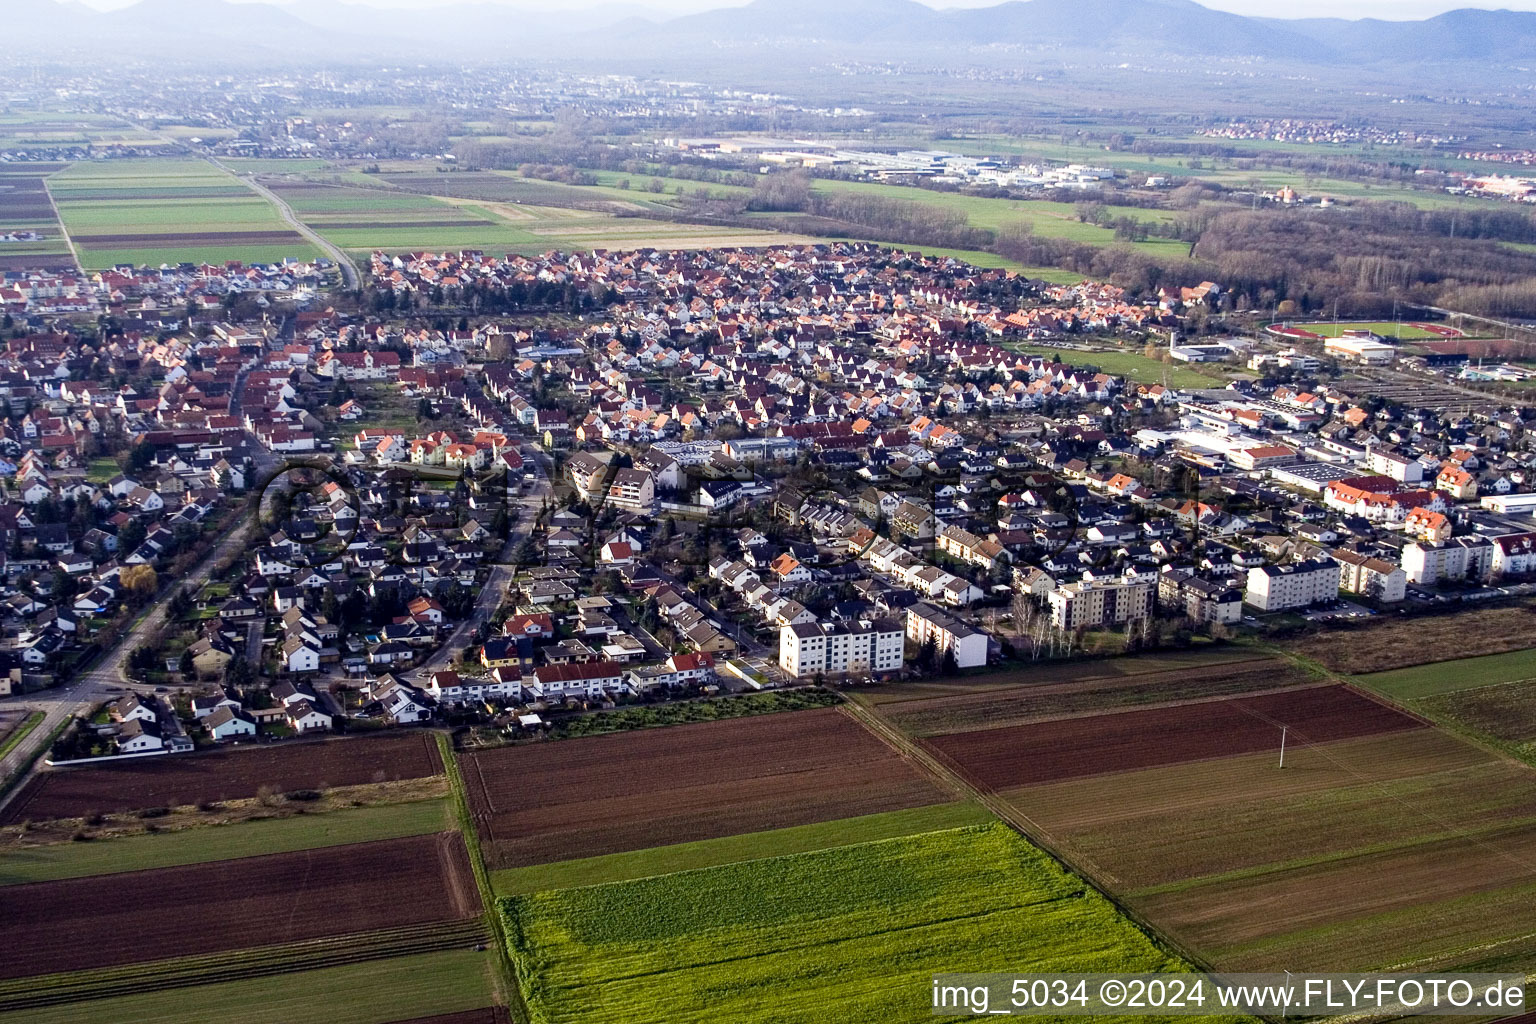 Photographie aérienne de Vue des rues et des maisons des quartiers résidentiels à Offenbach an der Queich dans le département Rhénanie-Palatinat, Allemagne